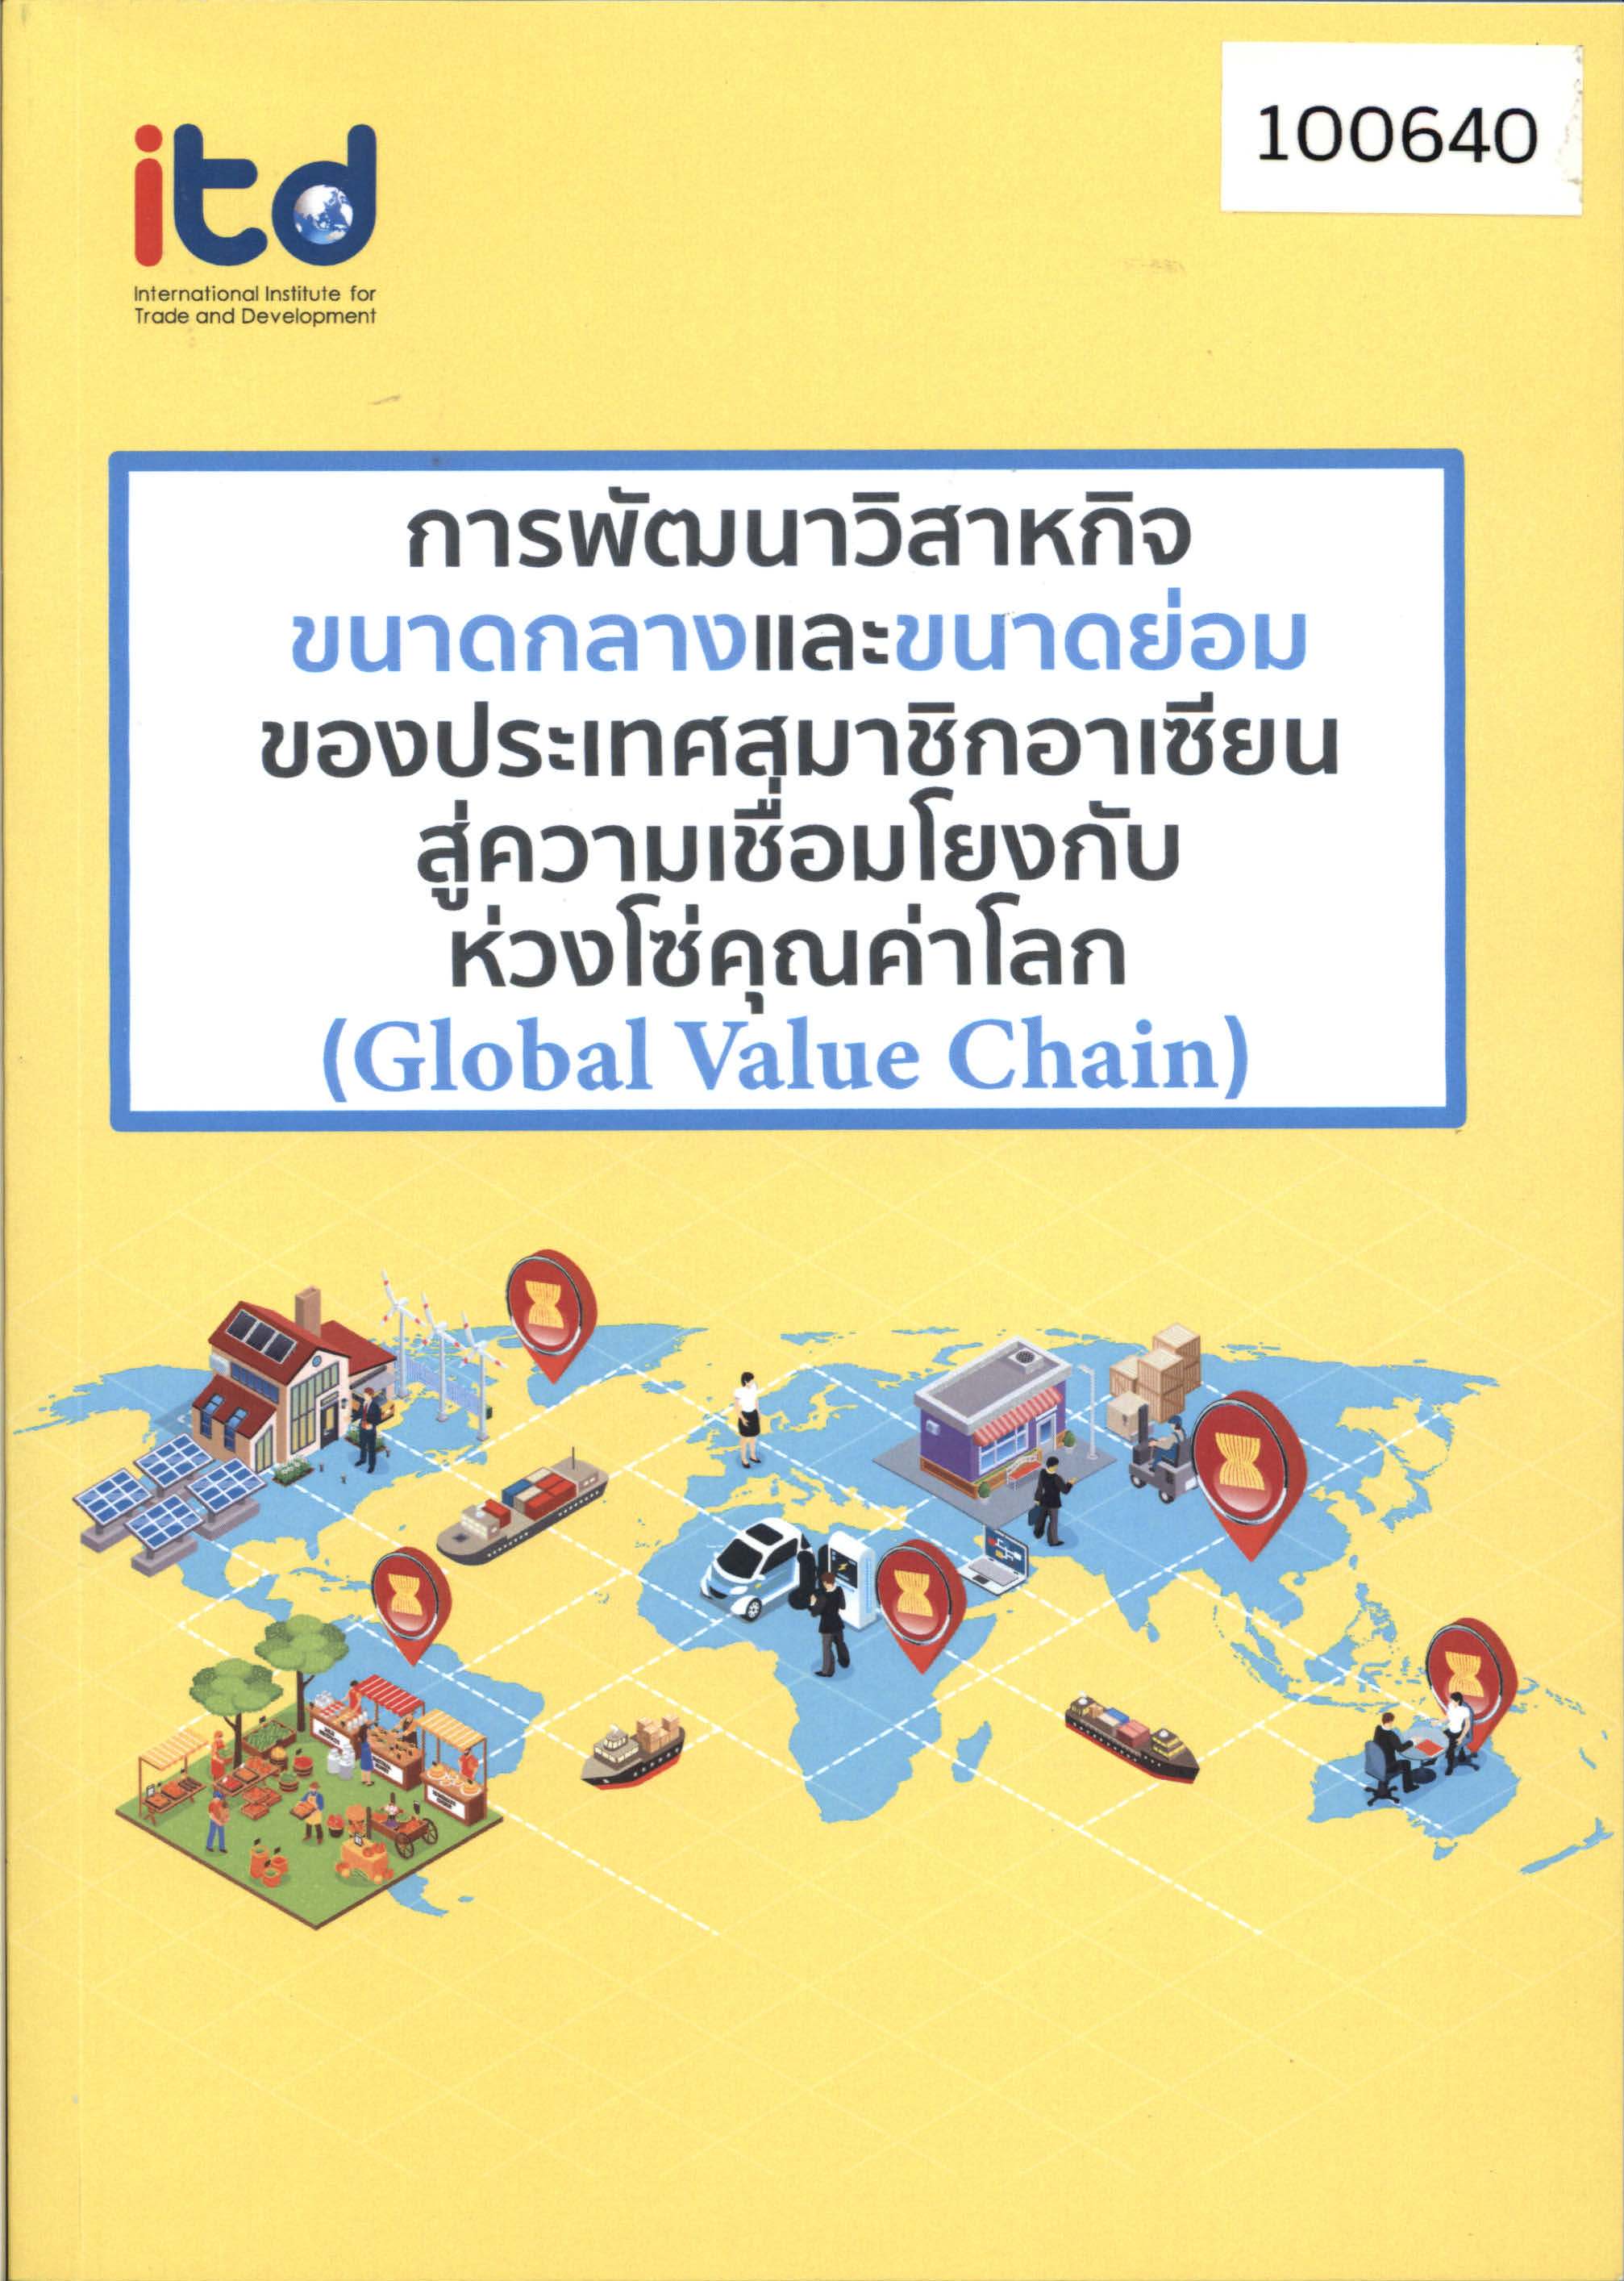 การพัฒนาวิสาหกิจขนาดกลางและขนาดย่อมของประเทศสมาชิกอาเซียนสู่ความเชื่อมโยงกับห่วงโซ่   คุณค่าโลก (Global Value Chain) 